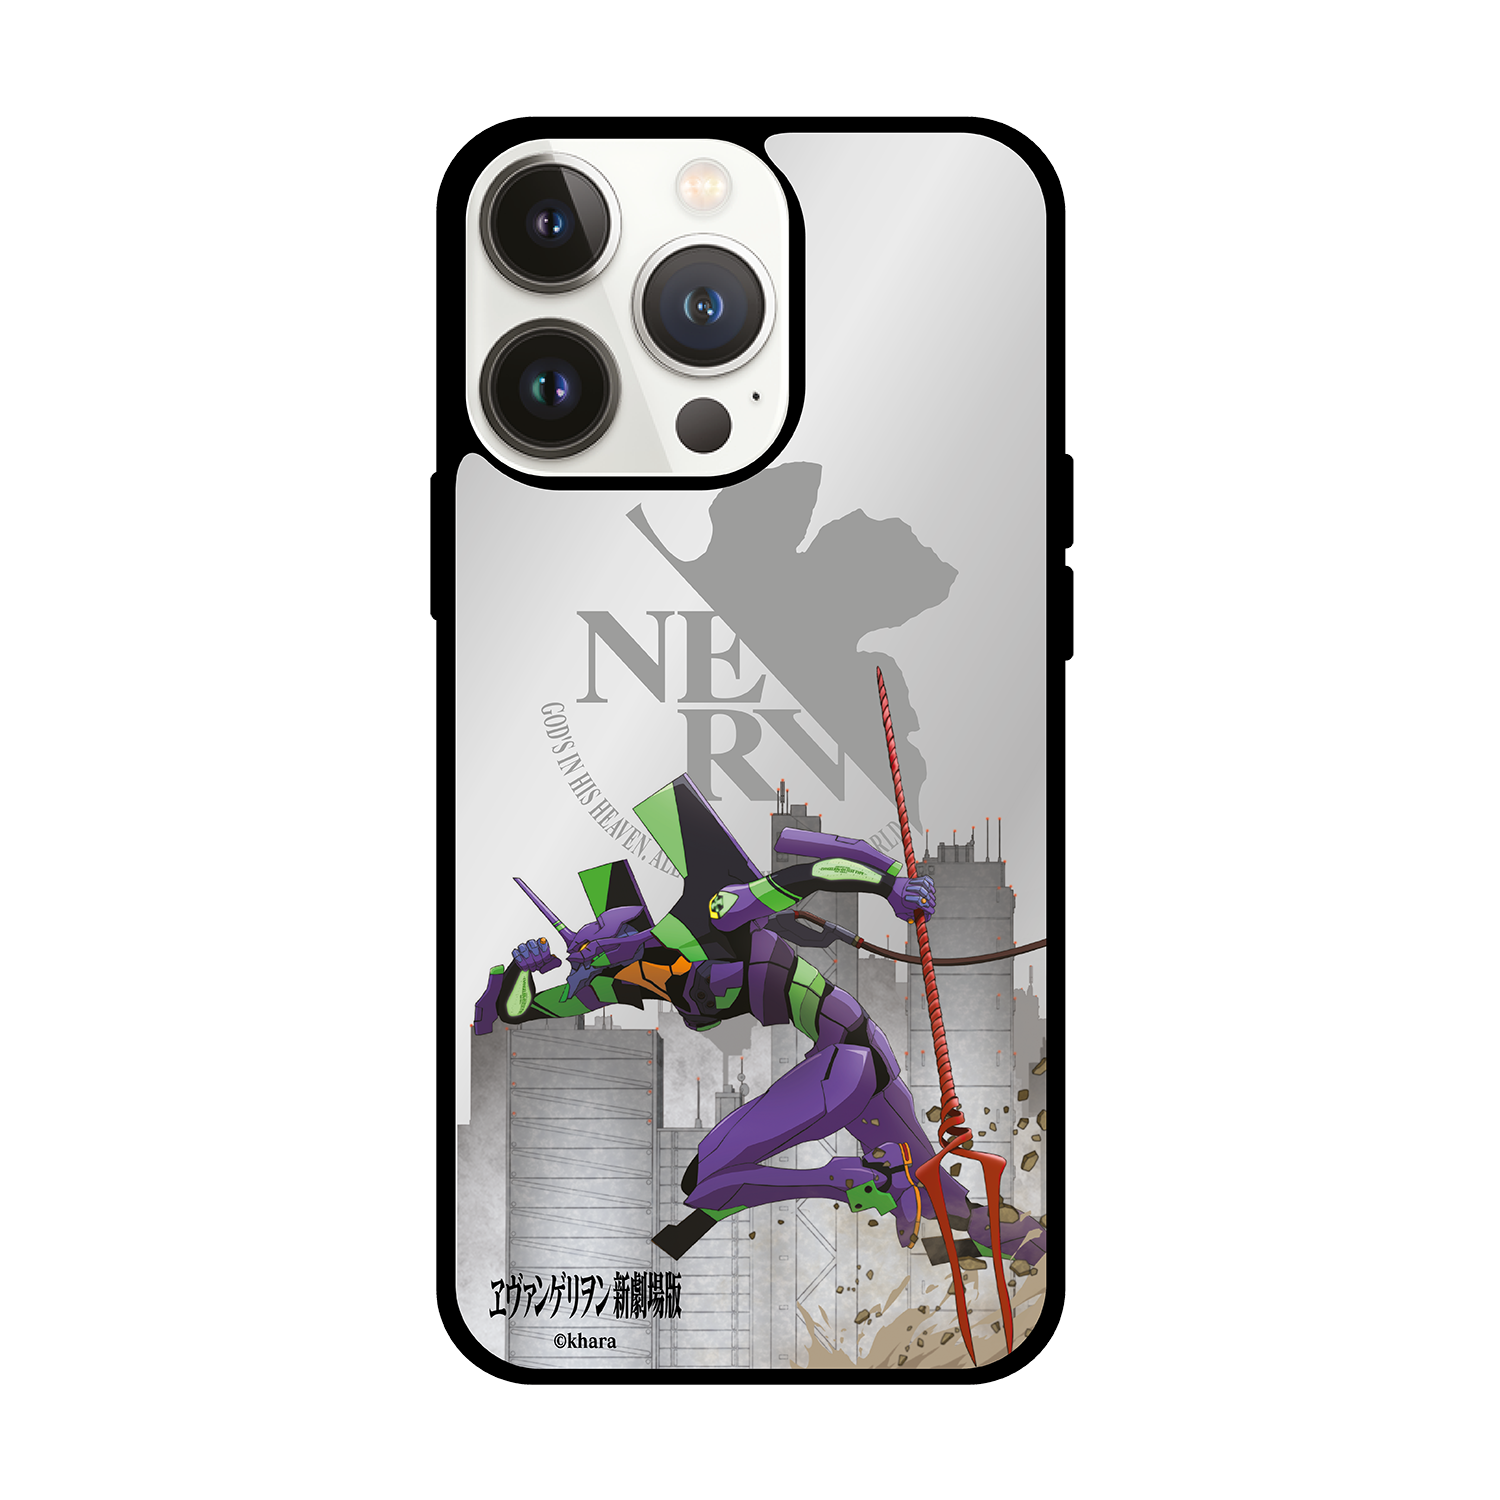 Evangelion 新世紀福音戰士 iPhone Mirror Case / Samsung Mirror Case (M-EVA-01(spear))